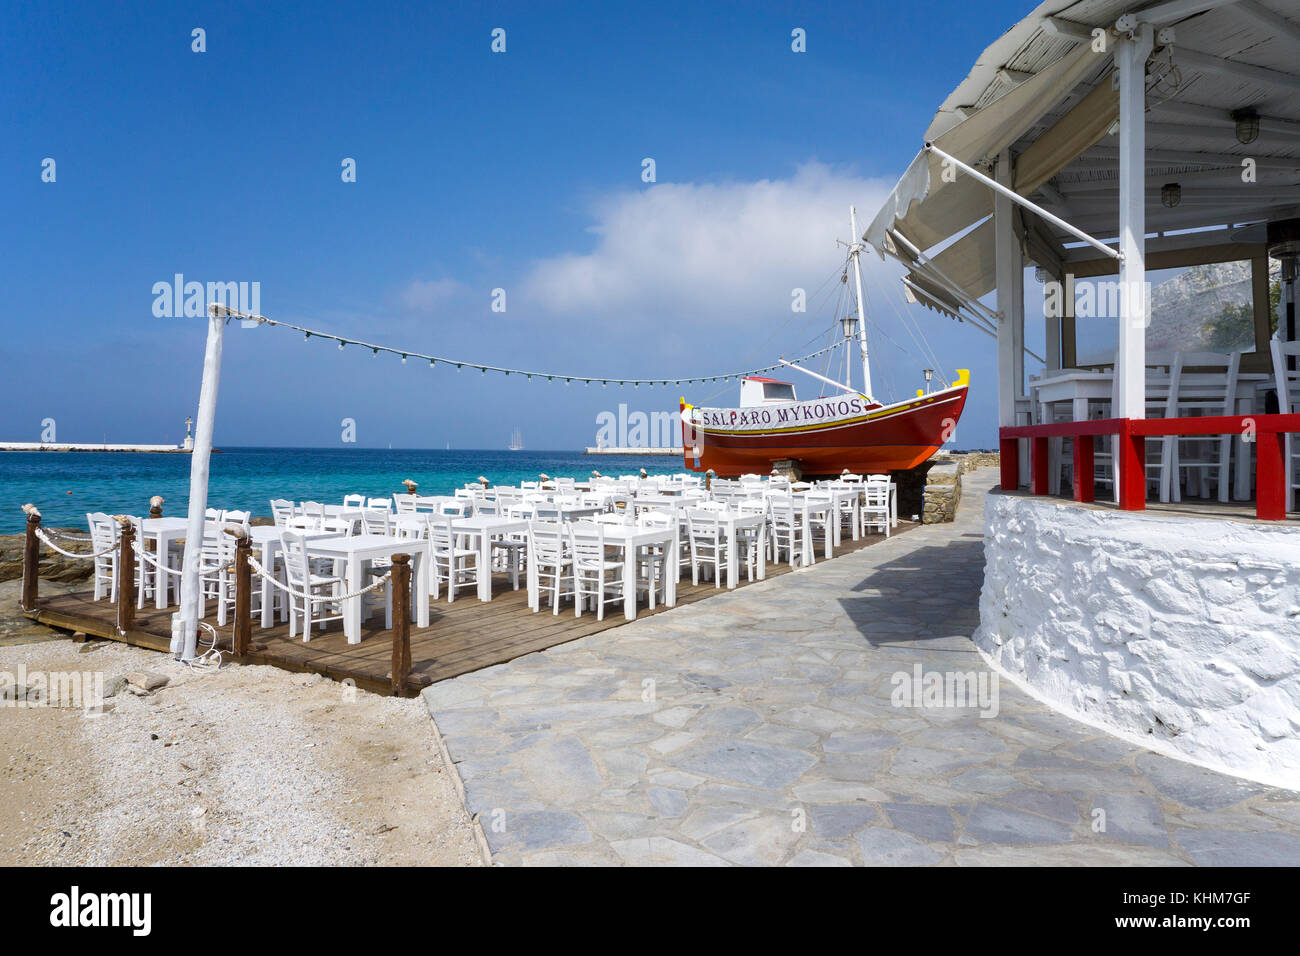 Griechische taverne am Meer, fischerboot als dekoration und werbetraeger, Mykonos-Stadt, Mykonos, kykladen, aegaeis, griechenland, mittelmeer, europa Foto Stock